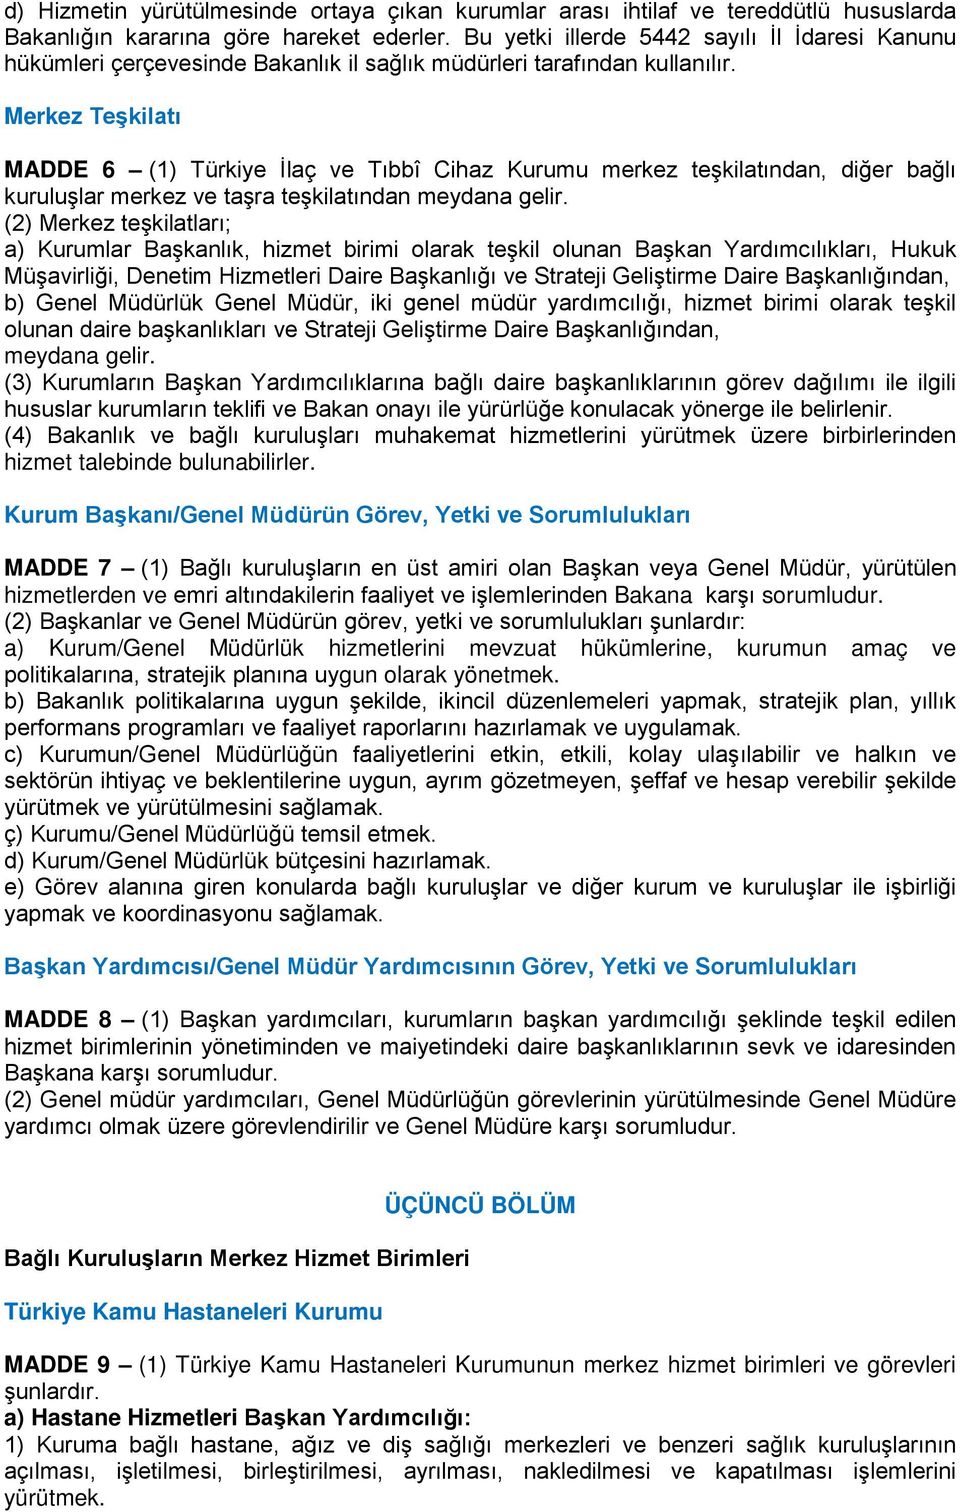 Merkez Teşkilatı MADDE 6 (1) Türkiye İlaç ve Tıbbî Cihaz Kurumu merkez teşkilatından, diğer bağlı kuruluşlar merkez ve taşra teşkilatından meydana gelir.